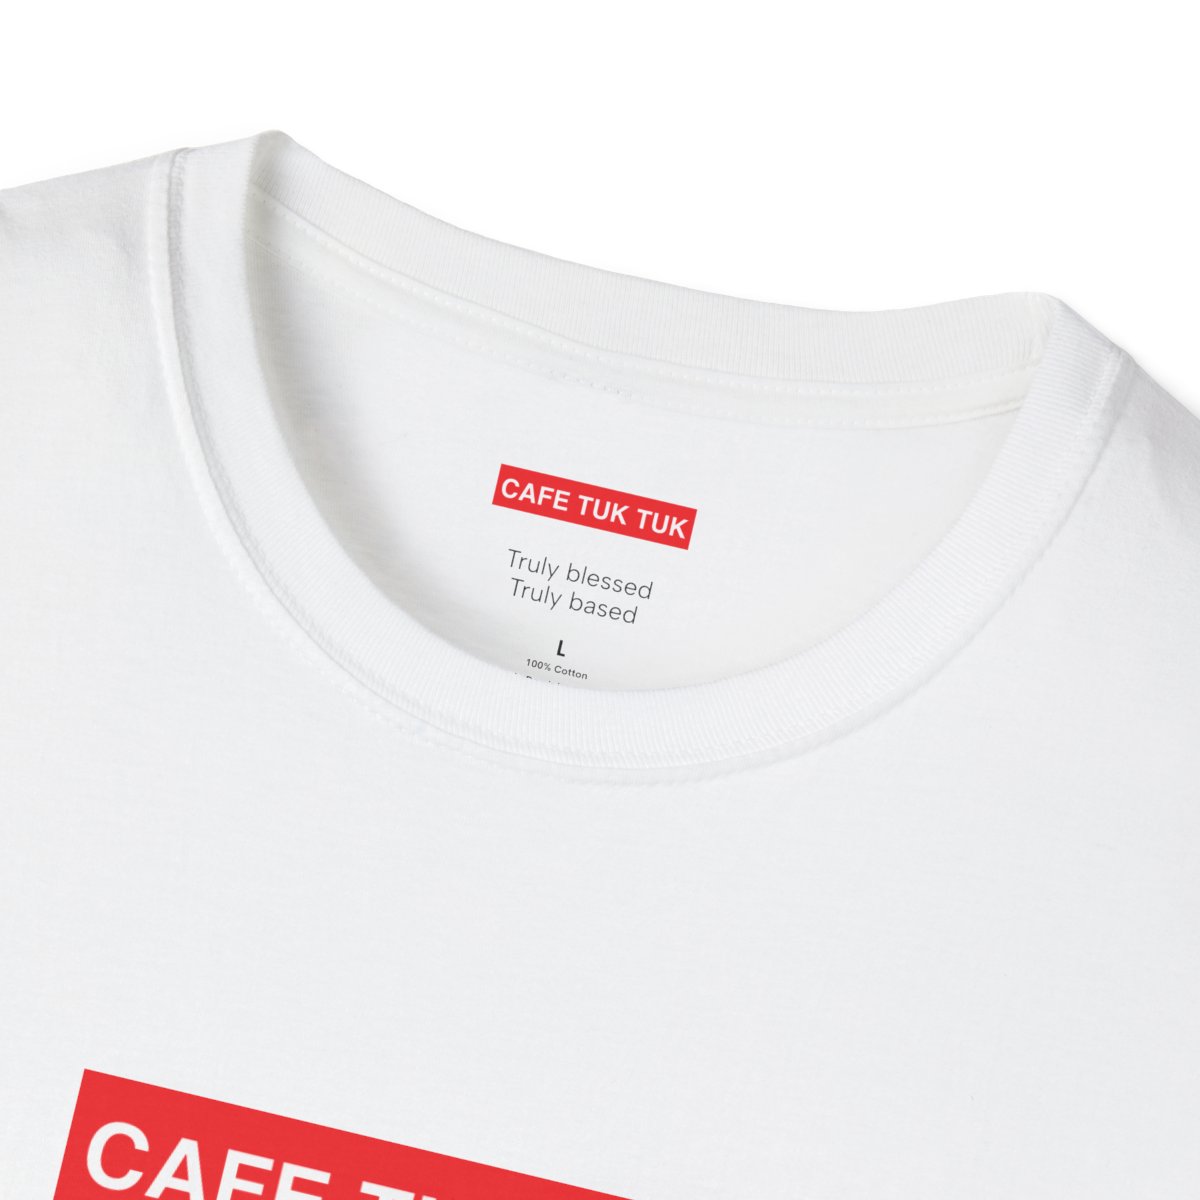 Single Sided Unisex Softstyle T-Shirt product thumbnail image